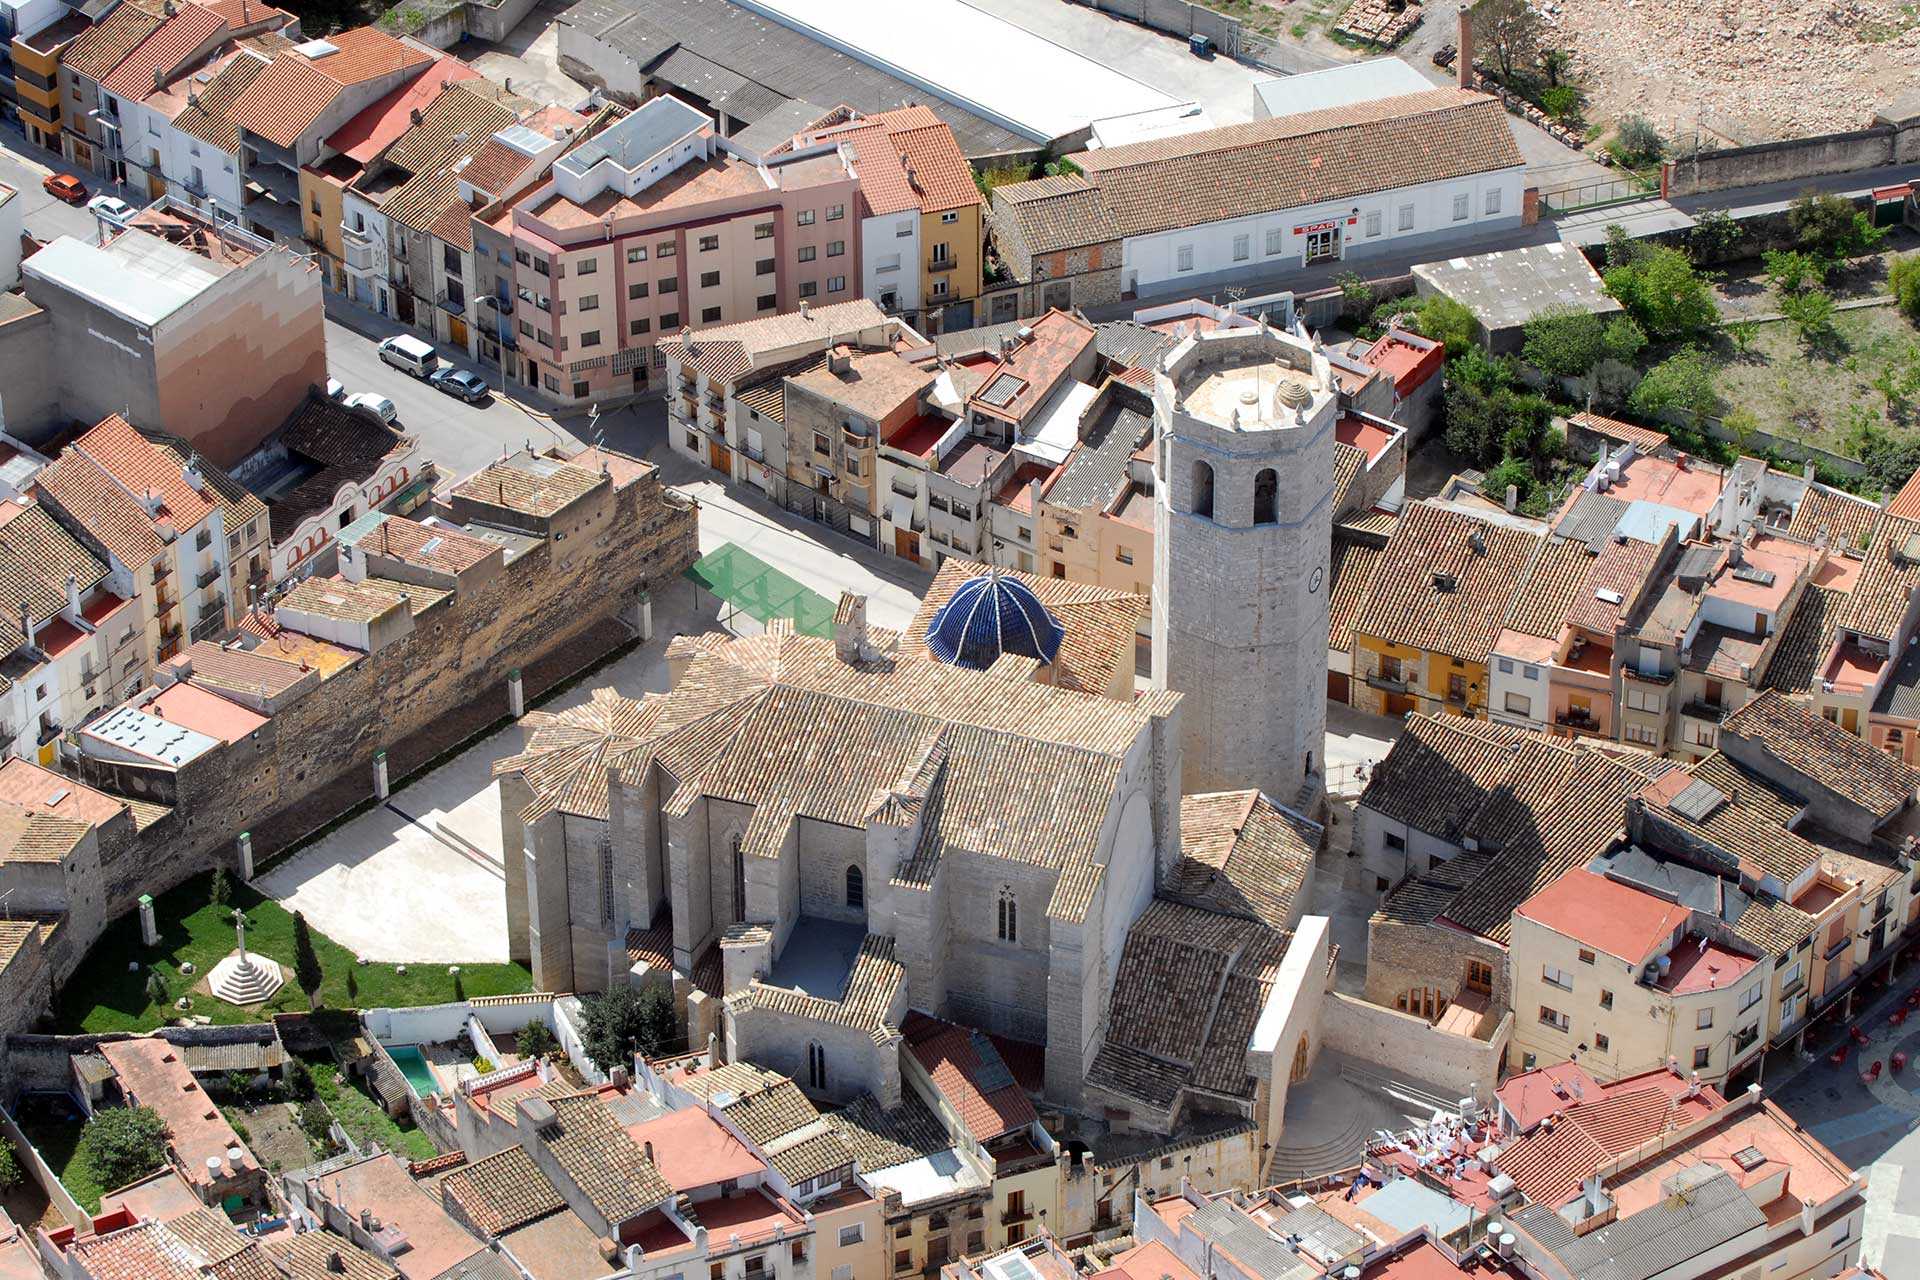 Historic centre of Sant Mateu